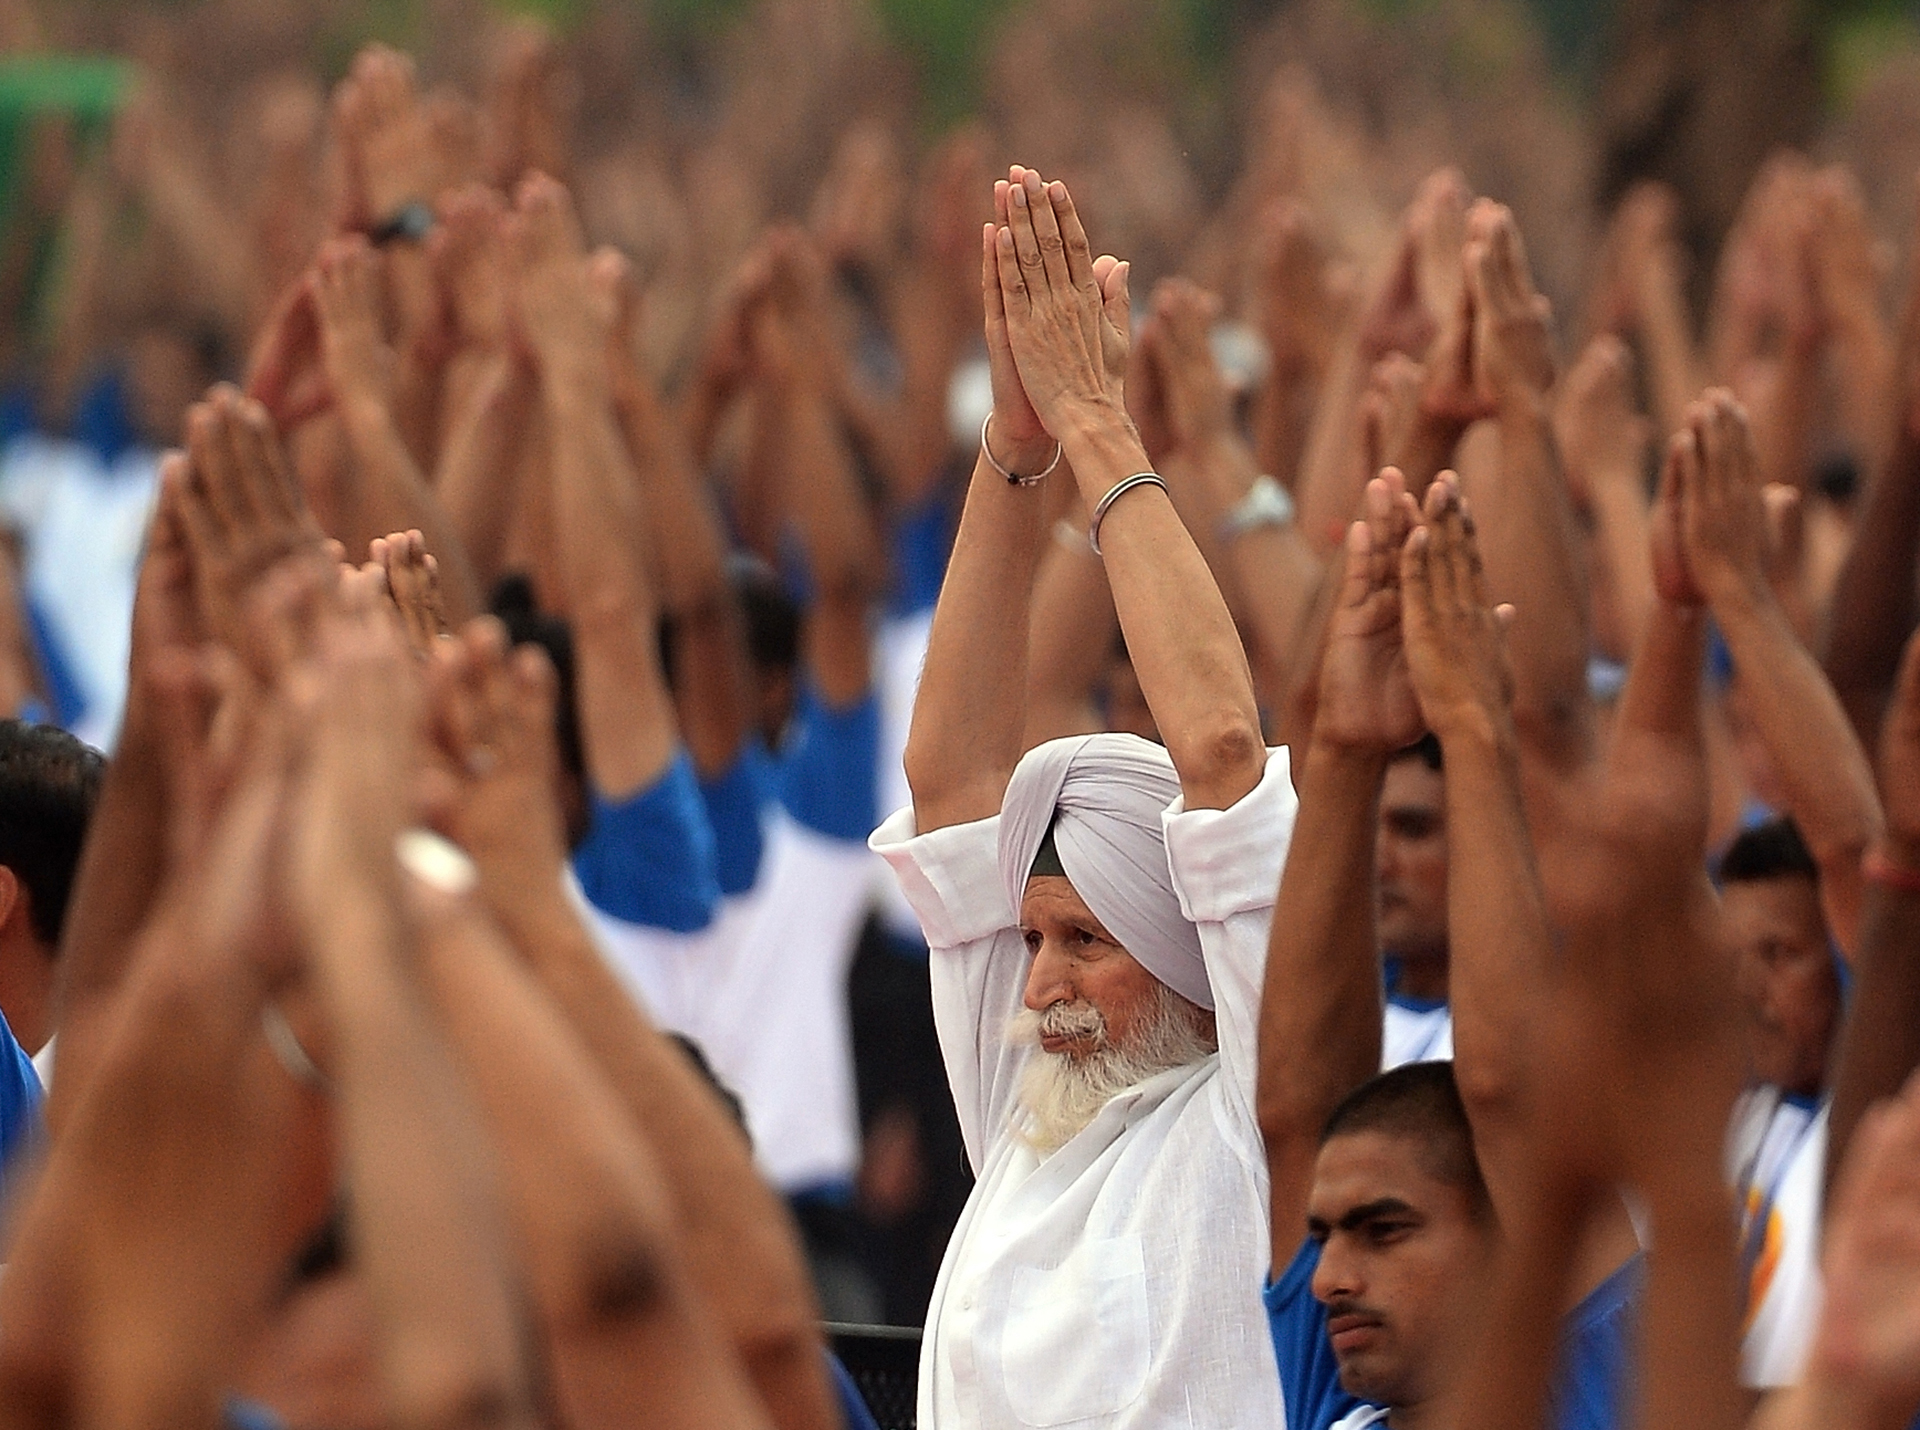 El objetivo de la observación Día Internacional del Yoga el 21 de junio son las demostraciones armoniosas masivas de esta disciplina milenaria (Foto: AFP PHOTO / PRAKASH SINGH)